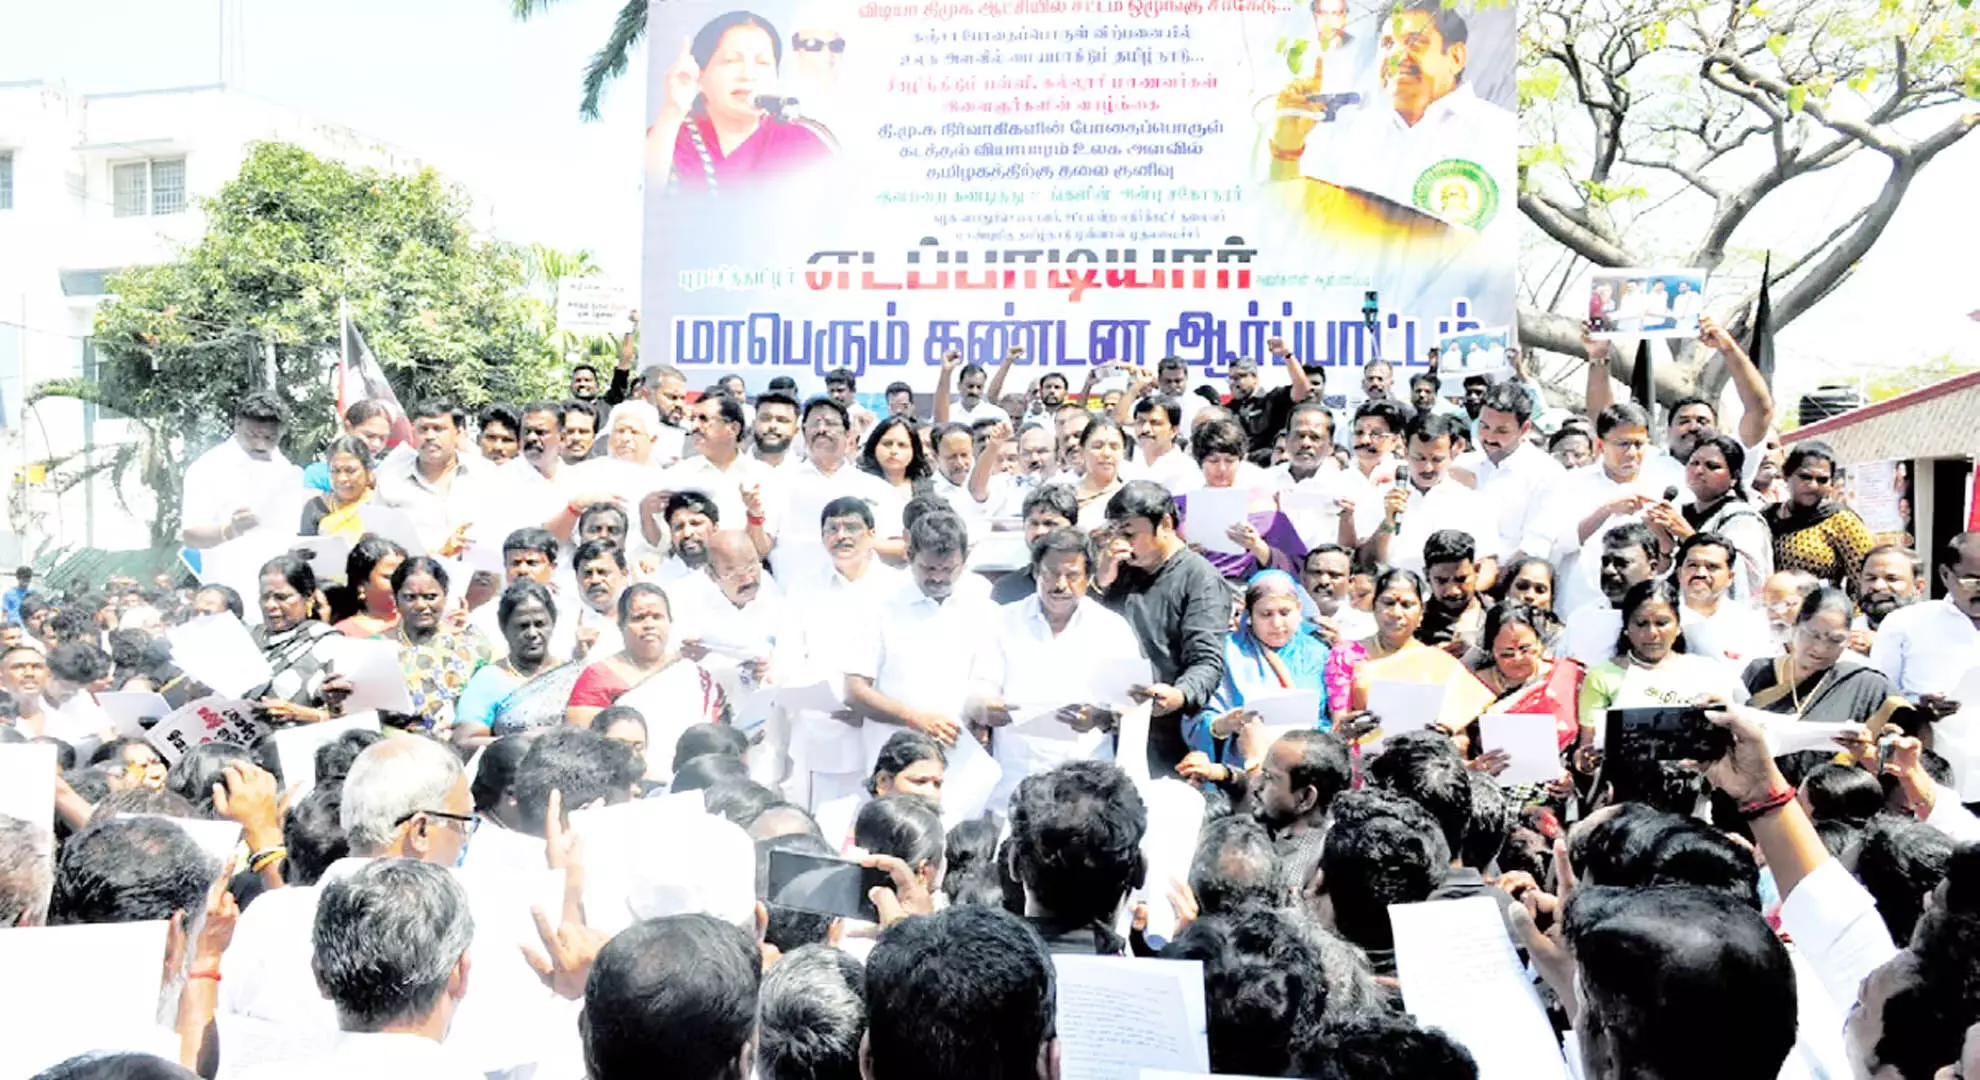 तमिलनाडु ड्रग हब बन रहा है: एआईएडीएमके नेता जयकुमार